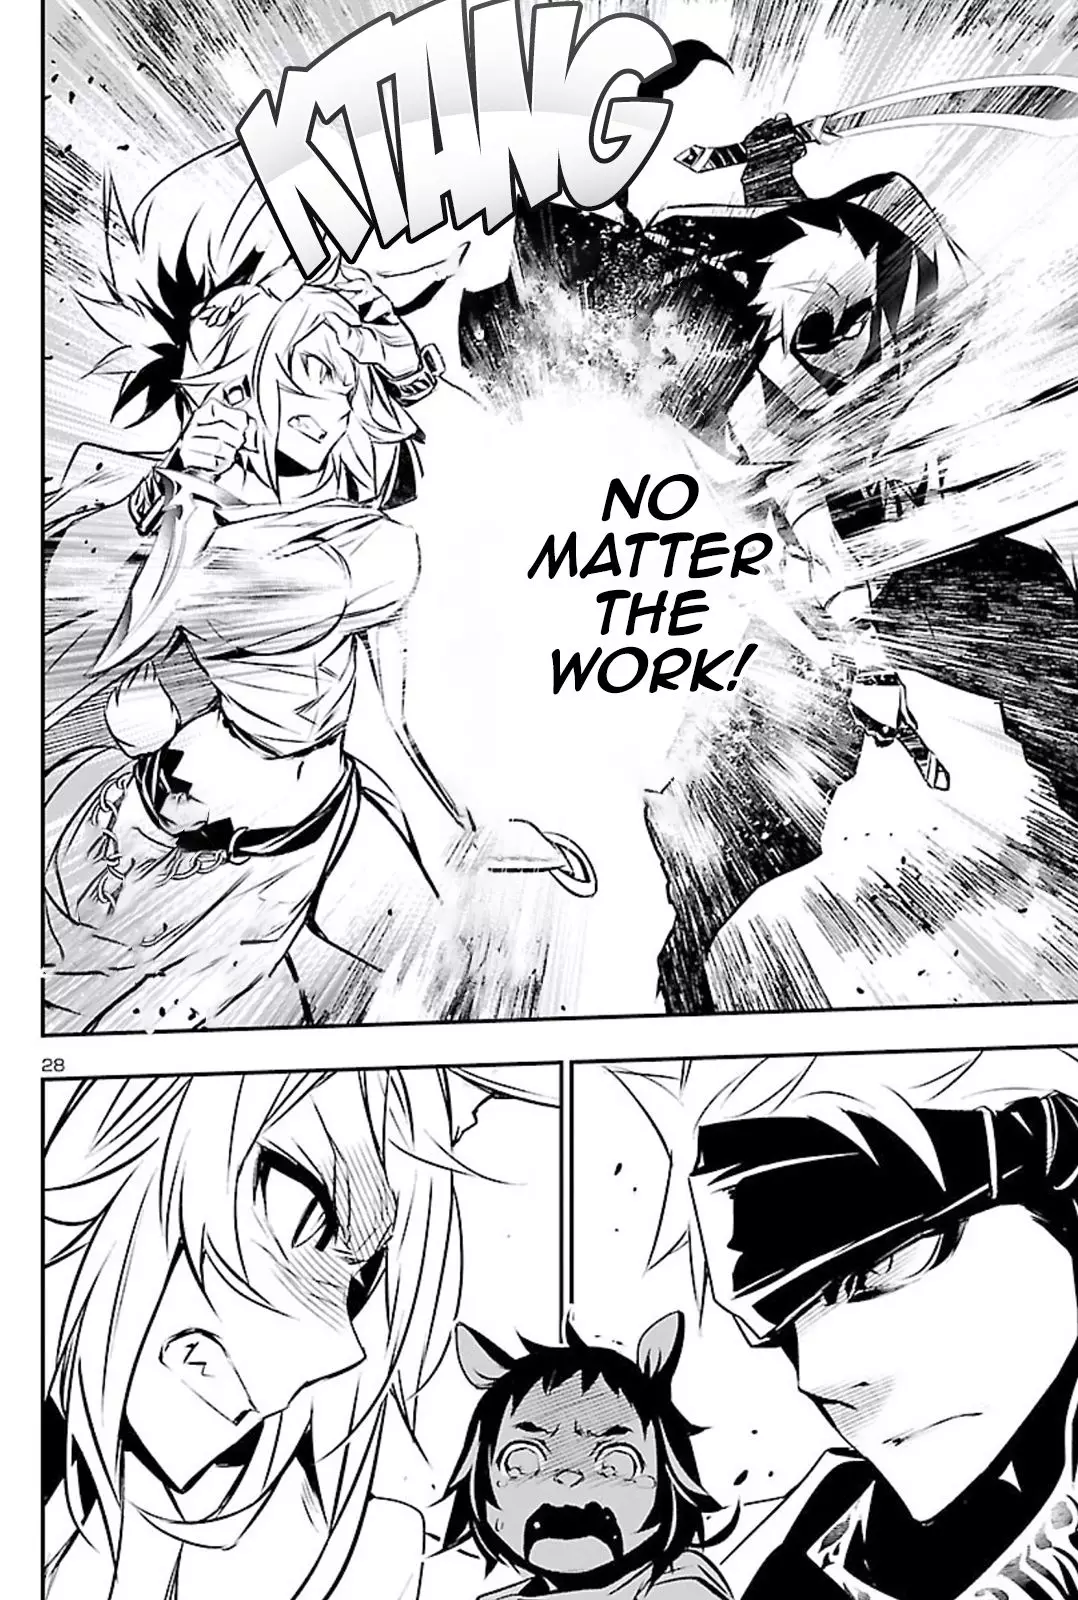 Shinju no Nectar - 49 page 28